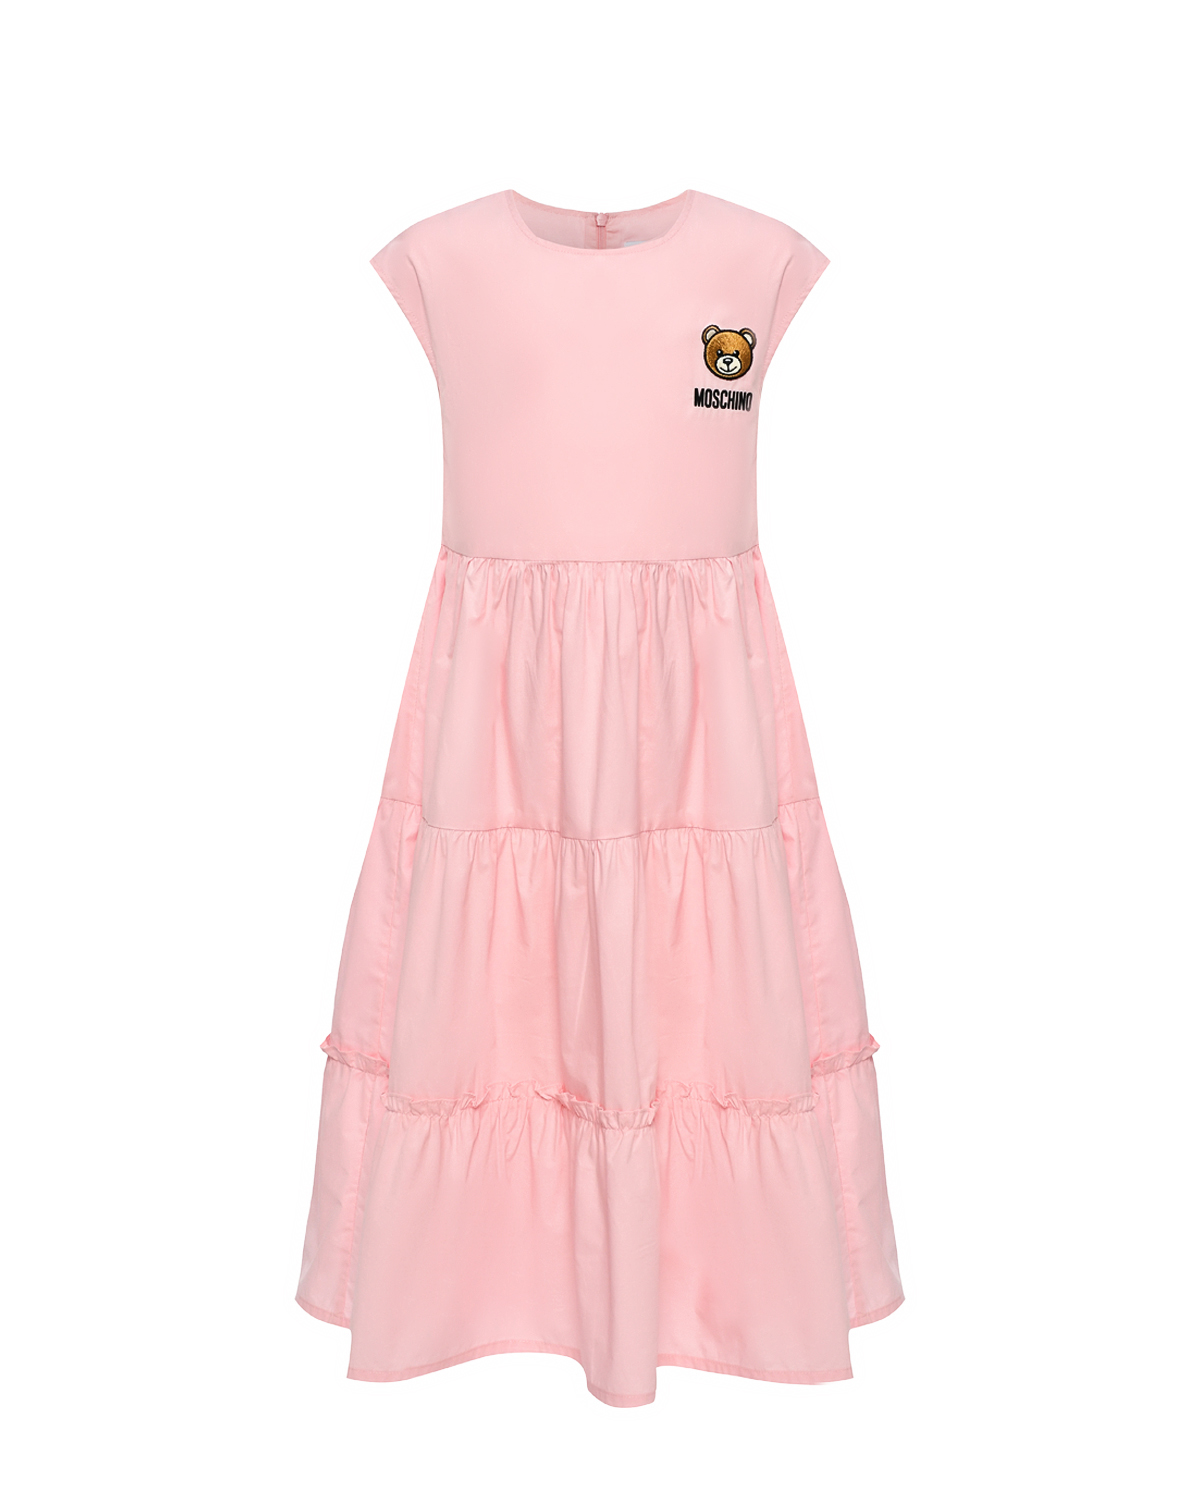 Платье с патчем, розовое Moschino, размер 128, цвет нет цвета - фото 1